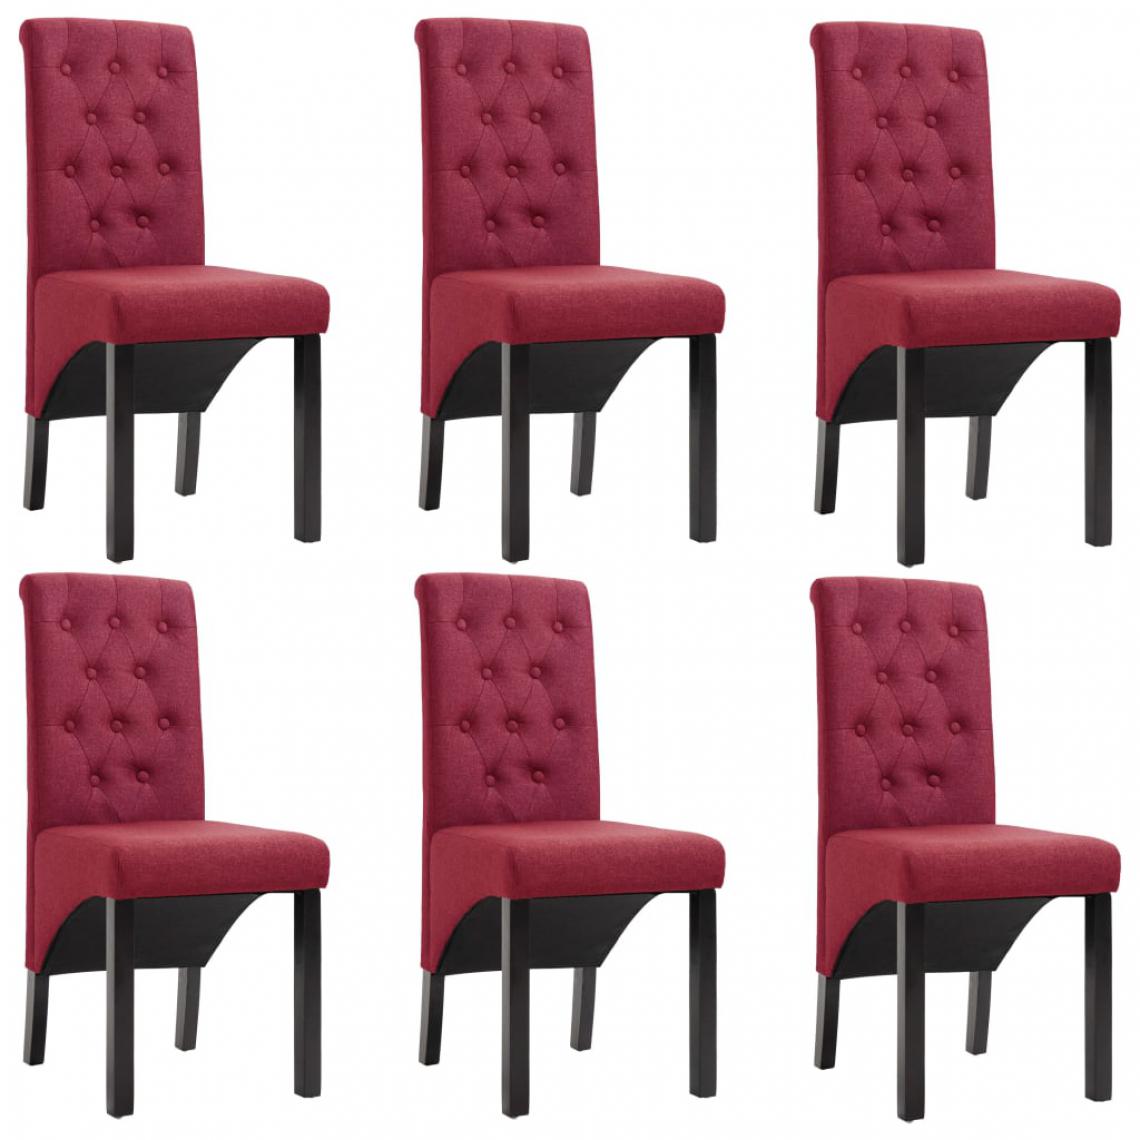 Chunhelife - Chunhelife Chaises de salle à manger 6 pcs Rouge bordeaux Tissu - Chaises